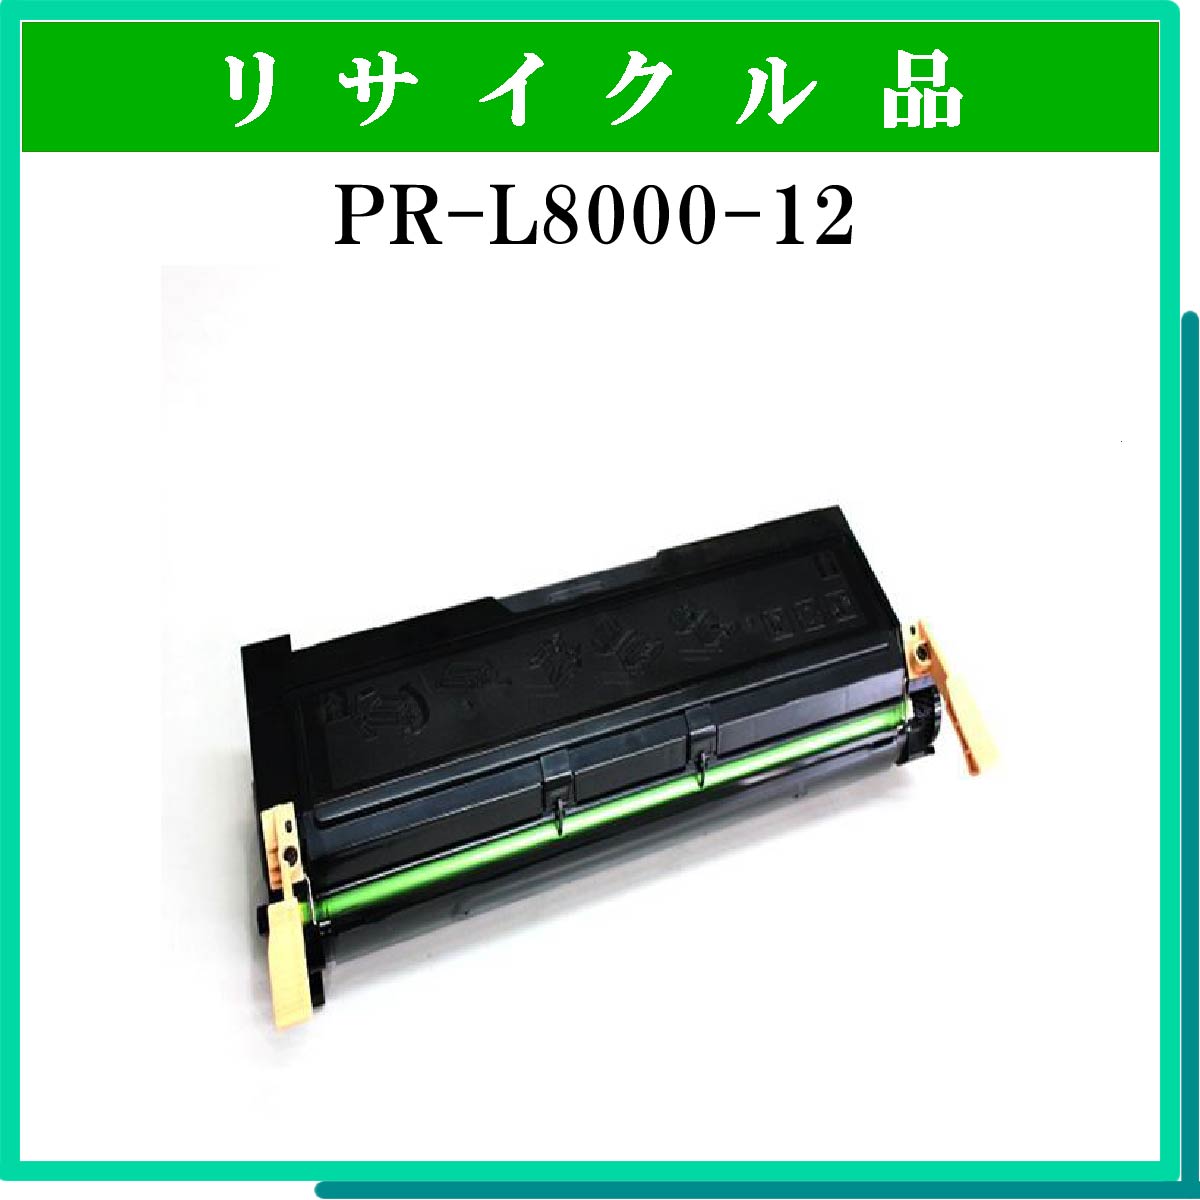 PR-L8000-12